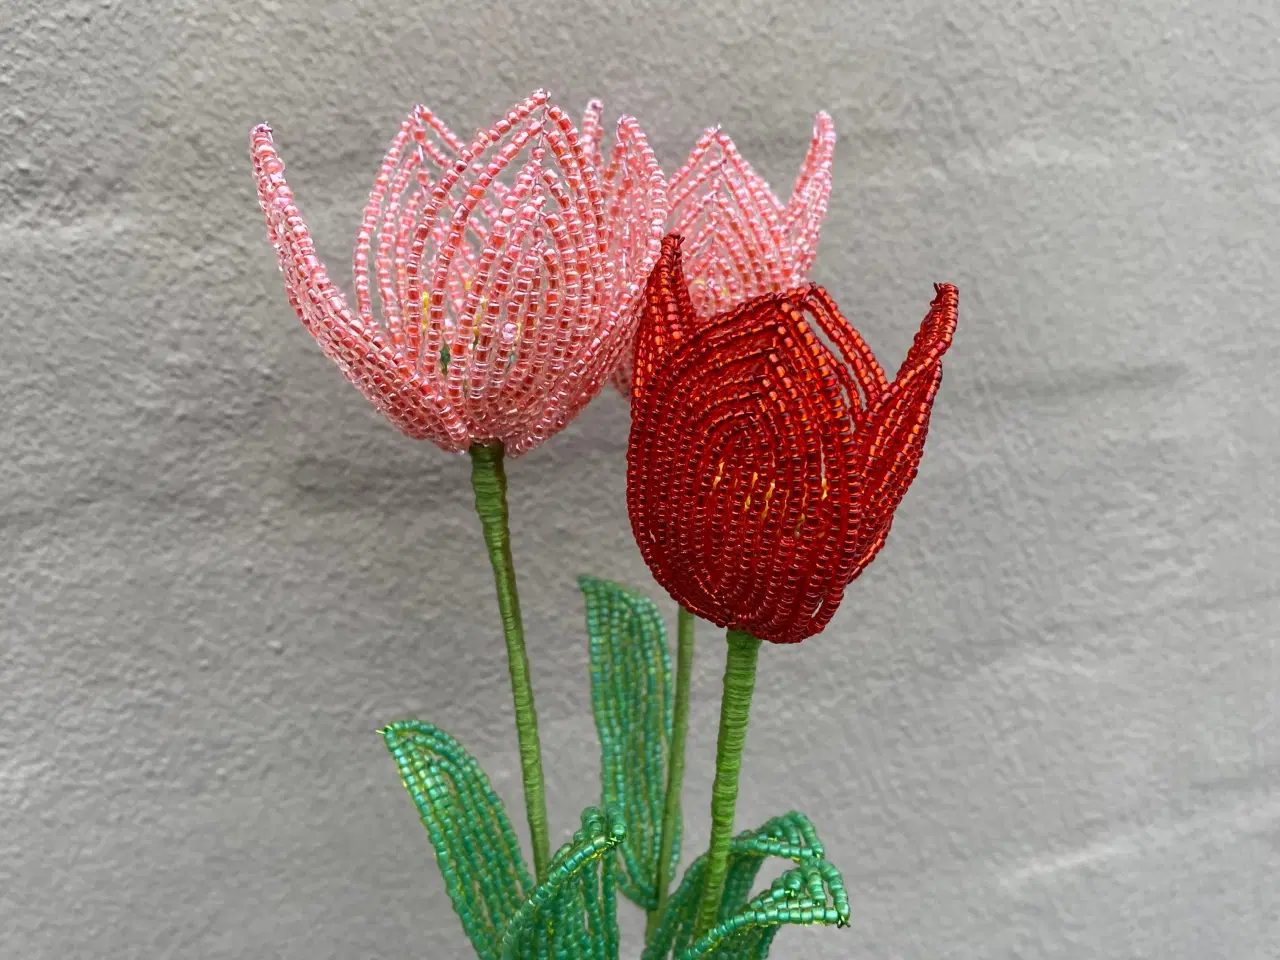 Billede 2 - Unikke evigheds blomster, lavet af perler